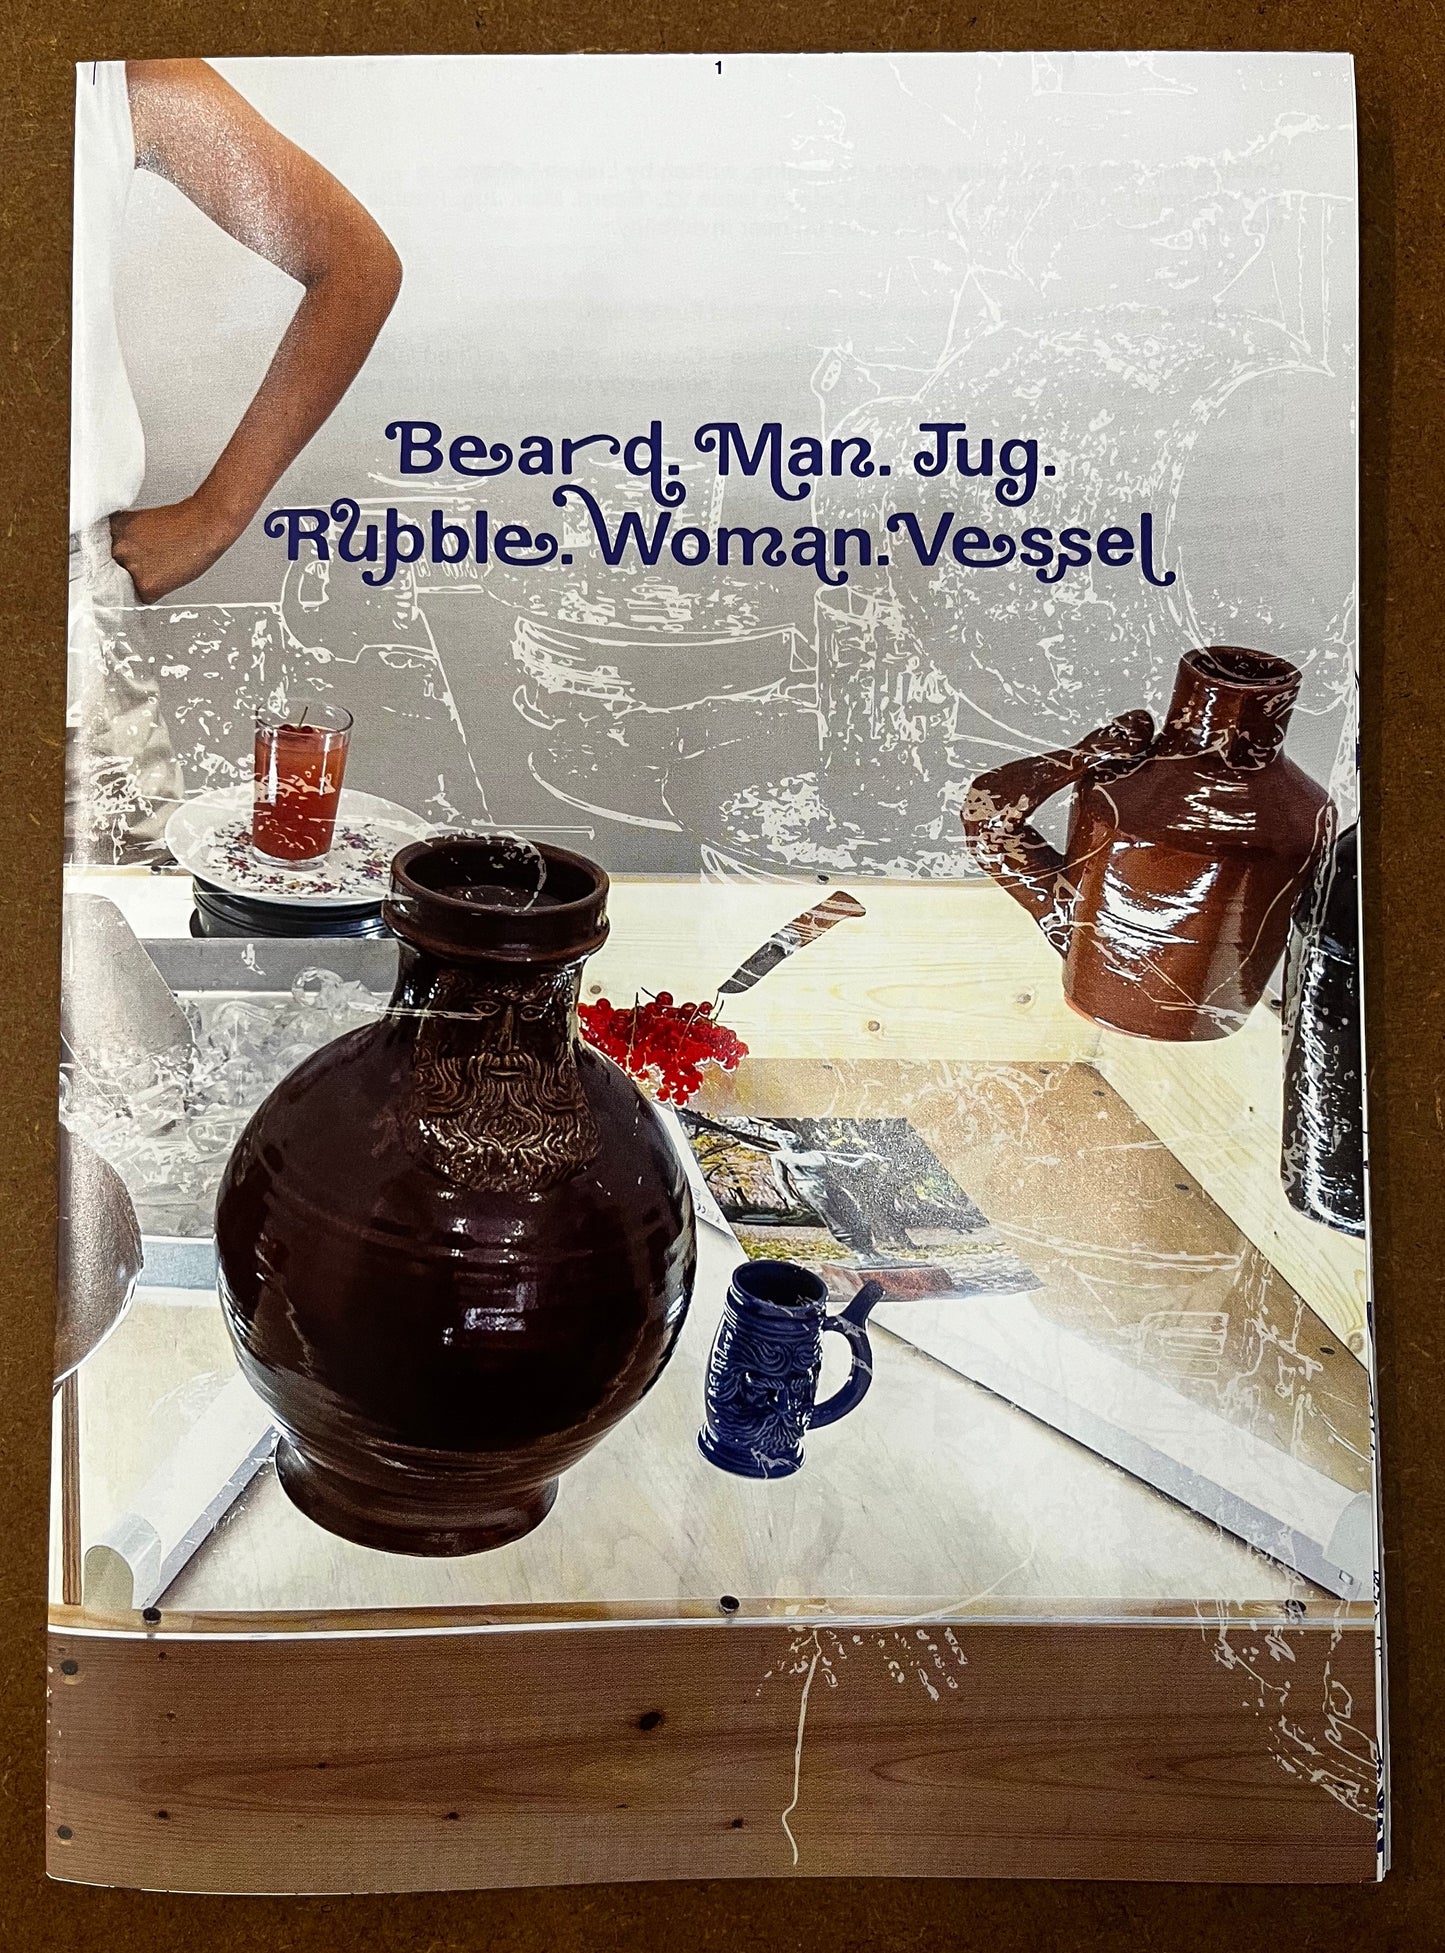 Catalog issue 22: ‘Beard. Man. Jug. Rubble. Woman. Vessel.'